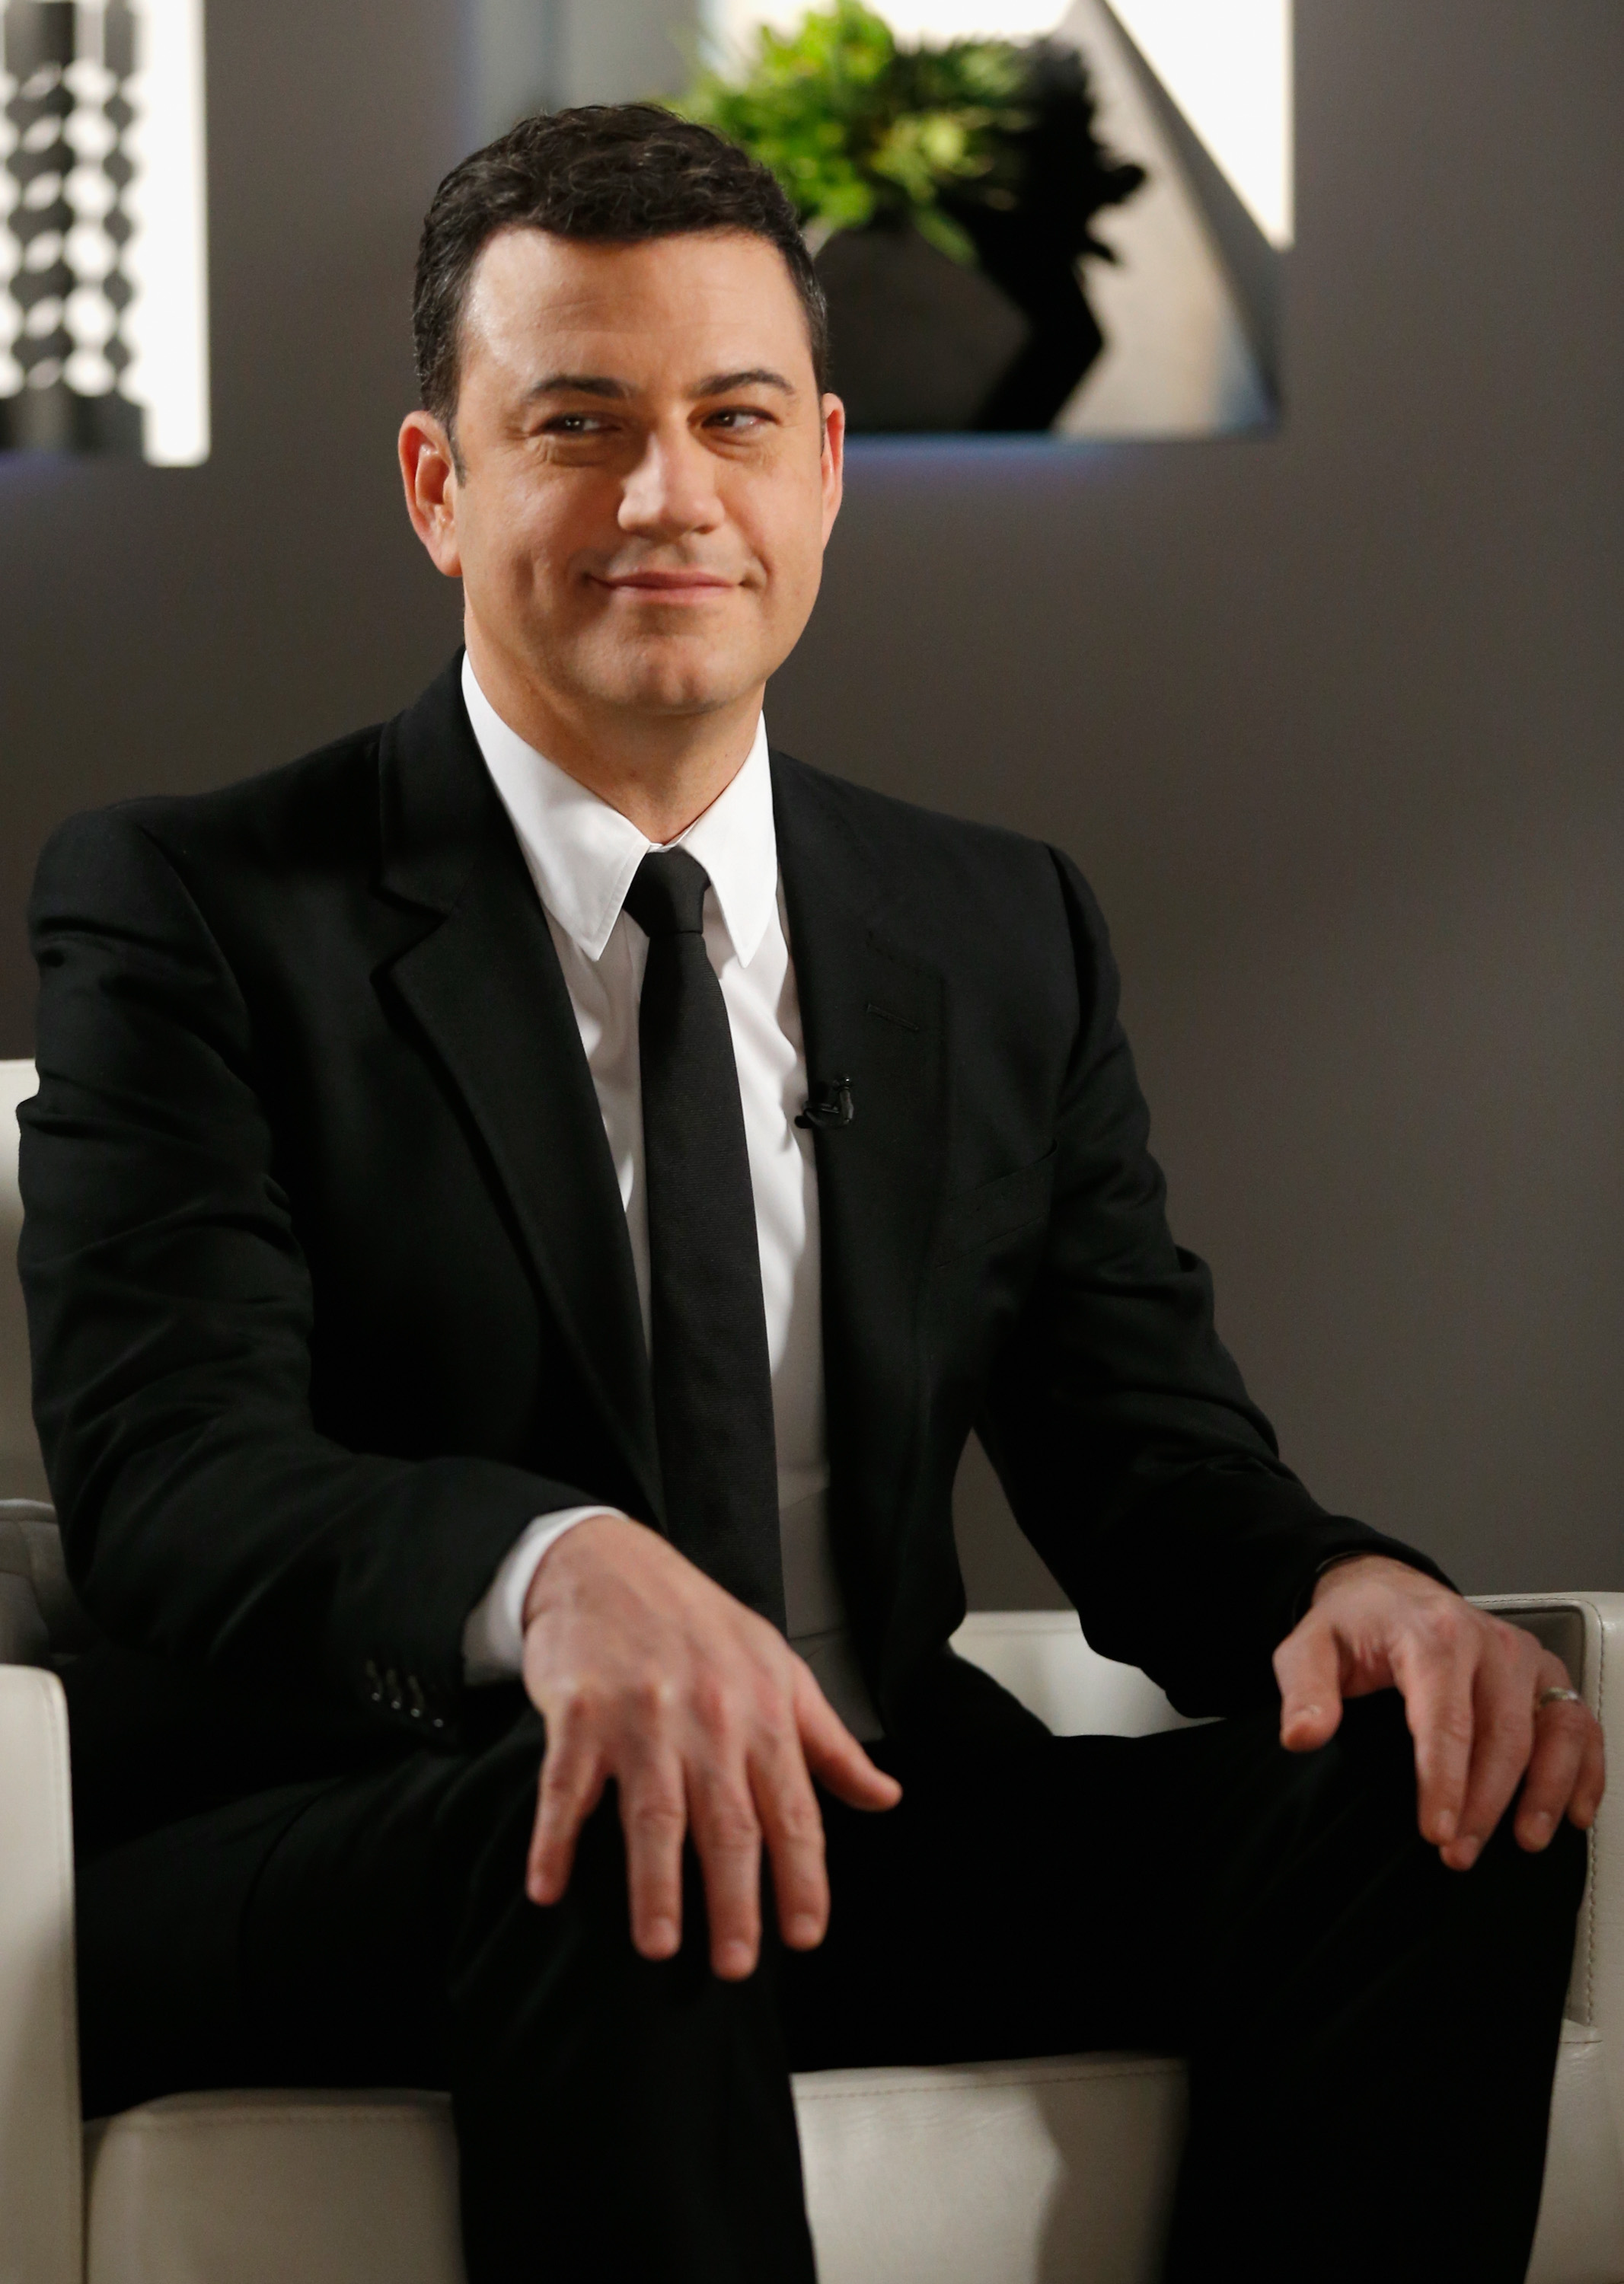 Jimmy Kimmel on March 29, 2015 in Los Angeles, California. (Joe Scarnici—2015 Getty Images)